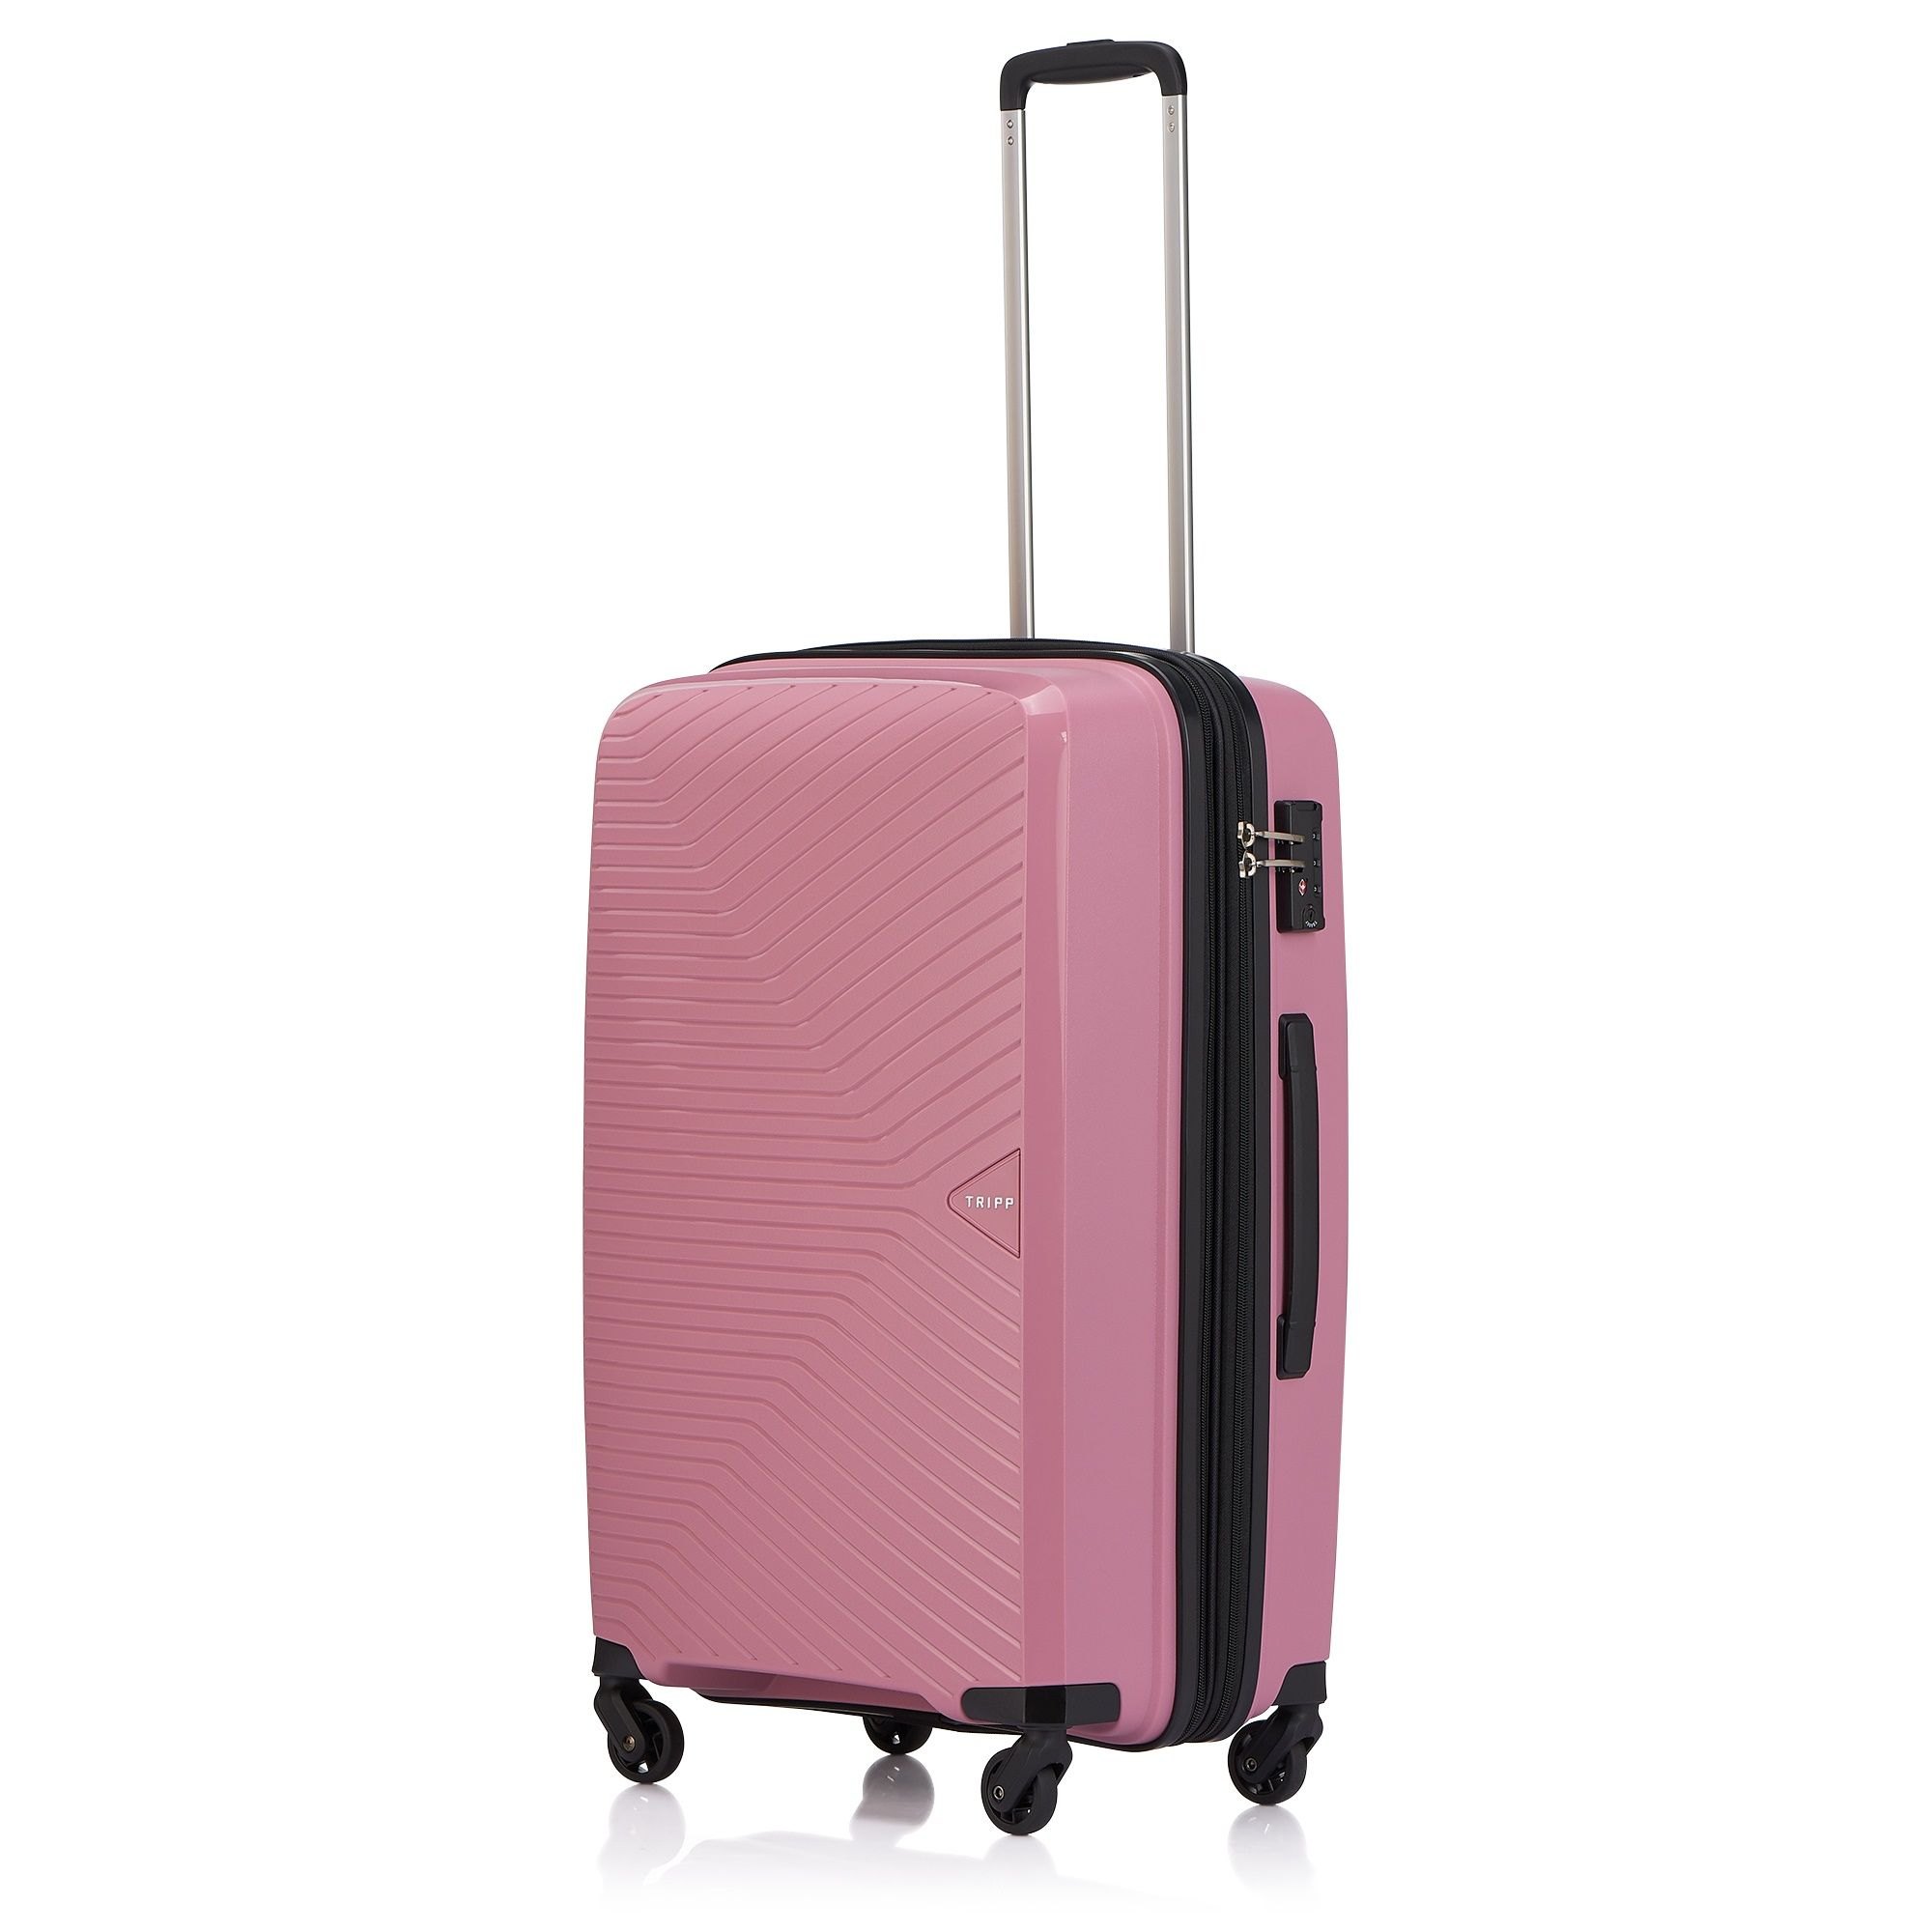 Tripp Chic Rose Medium Suitcase - Tripp Ltd